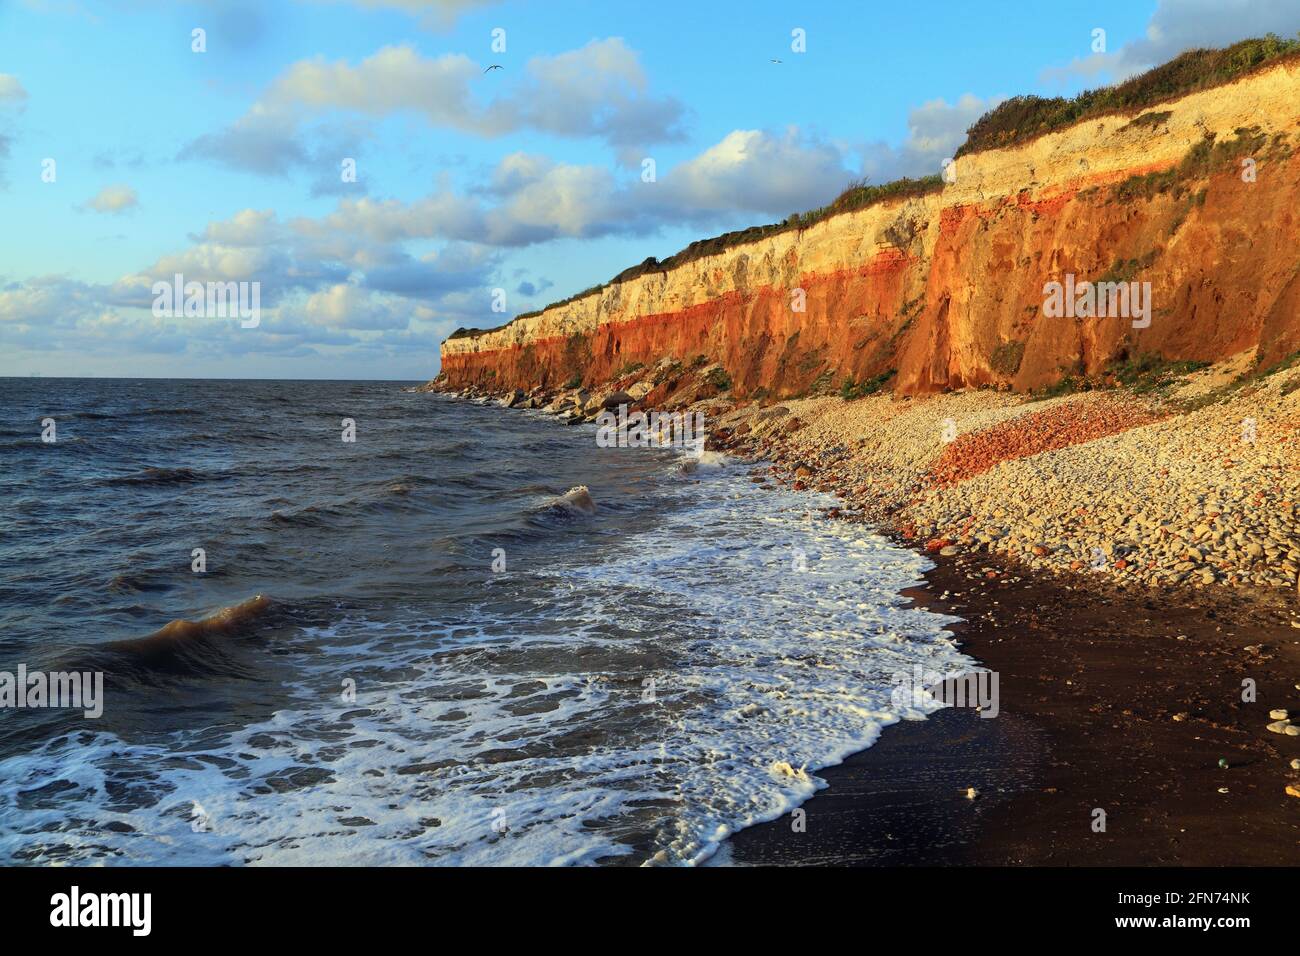 Hunstanton Cliffs, patrón de rayas, olas, marea alta, surf, The Wash, Mar del Norte, Norfolk, Inglaterra, Reino Unido Foto de stock